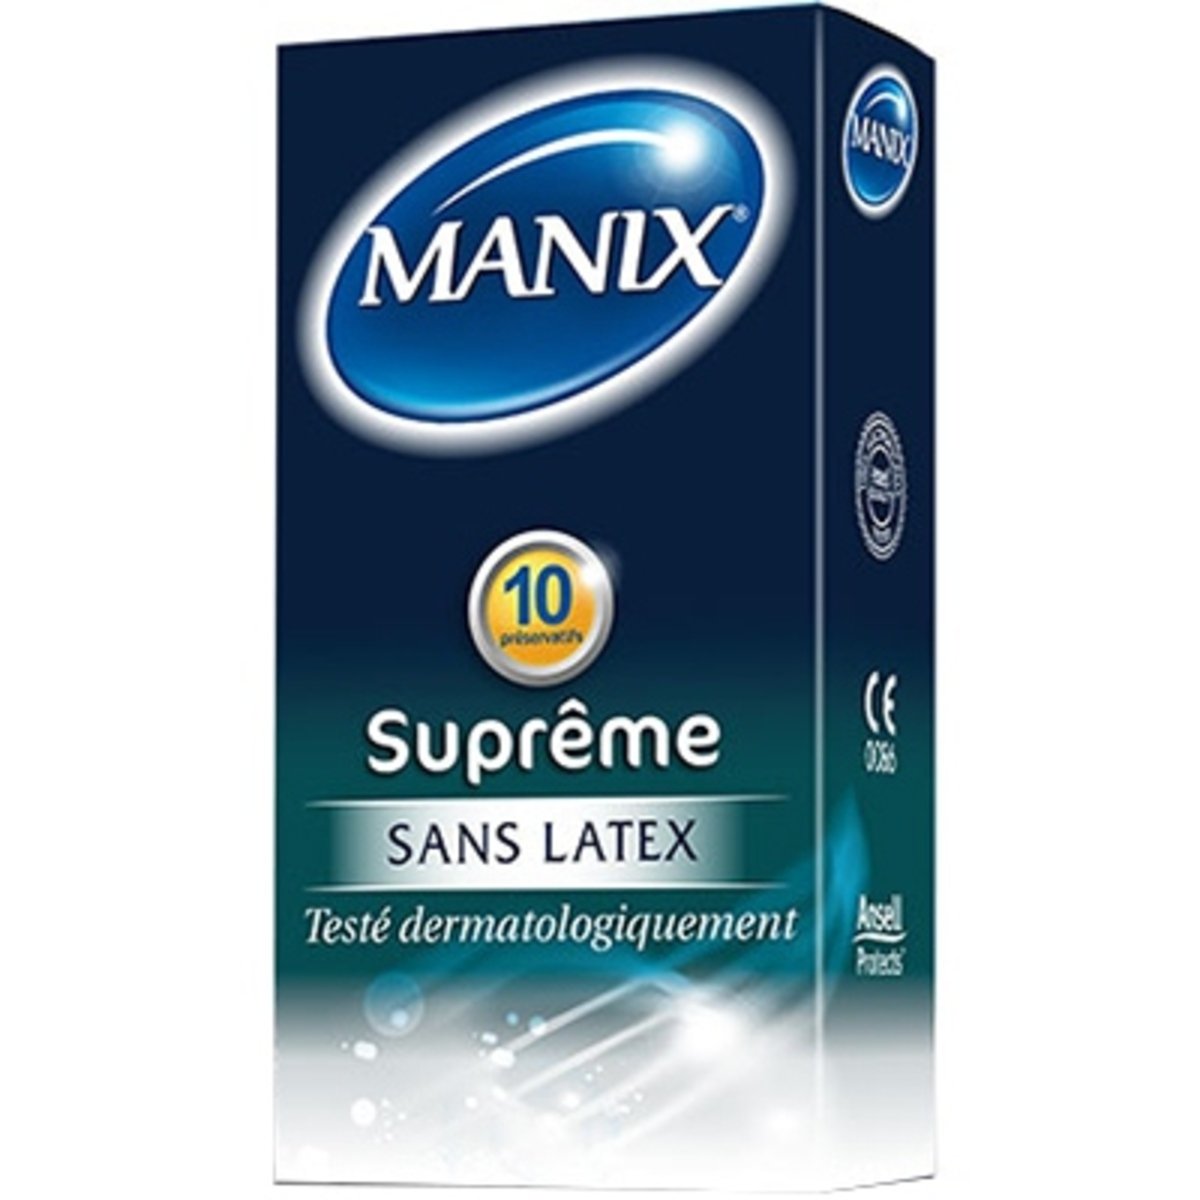 Manix Suprême Sans Latex 10 Préservatifs